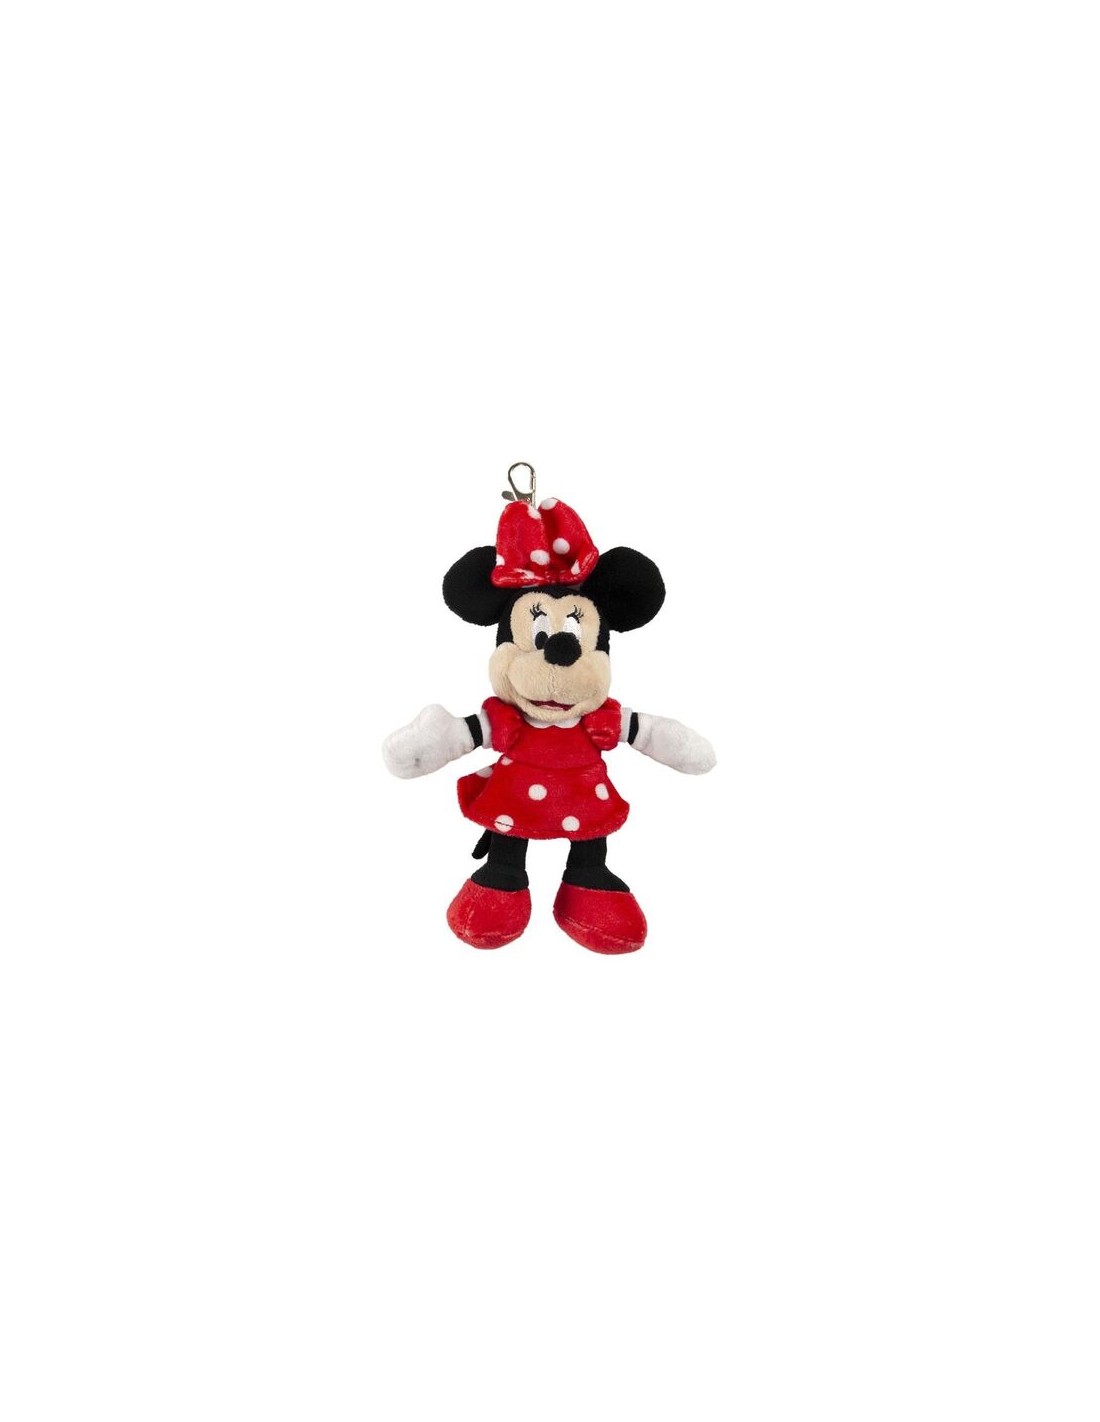 Sierra Buen sentimiento Dislocación Llavero peluche de Minnie Mouse Premium - Oferta - Envío GRATIS